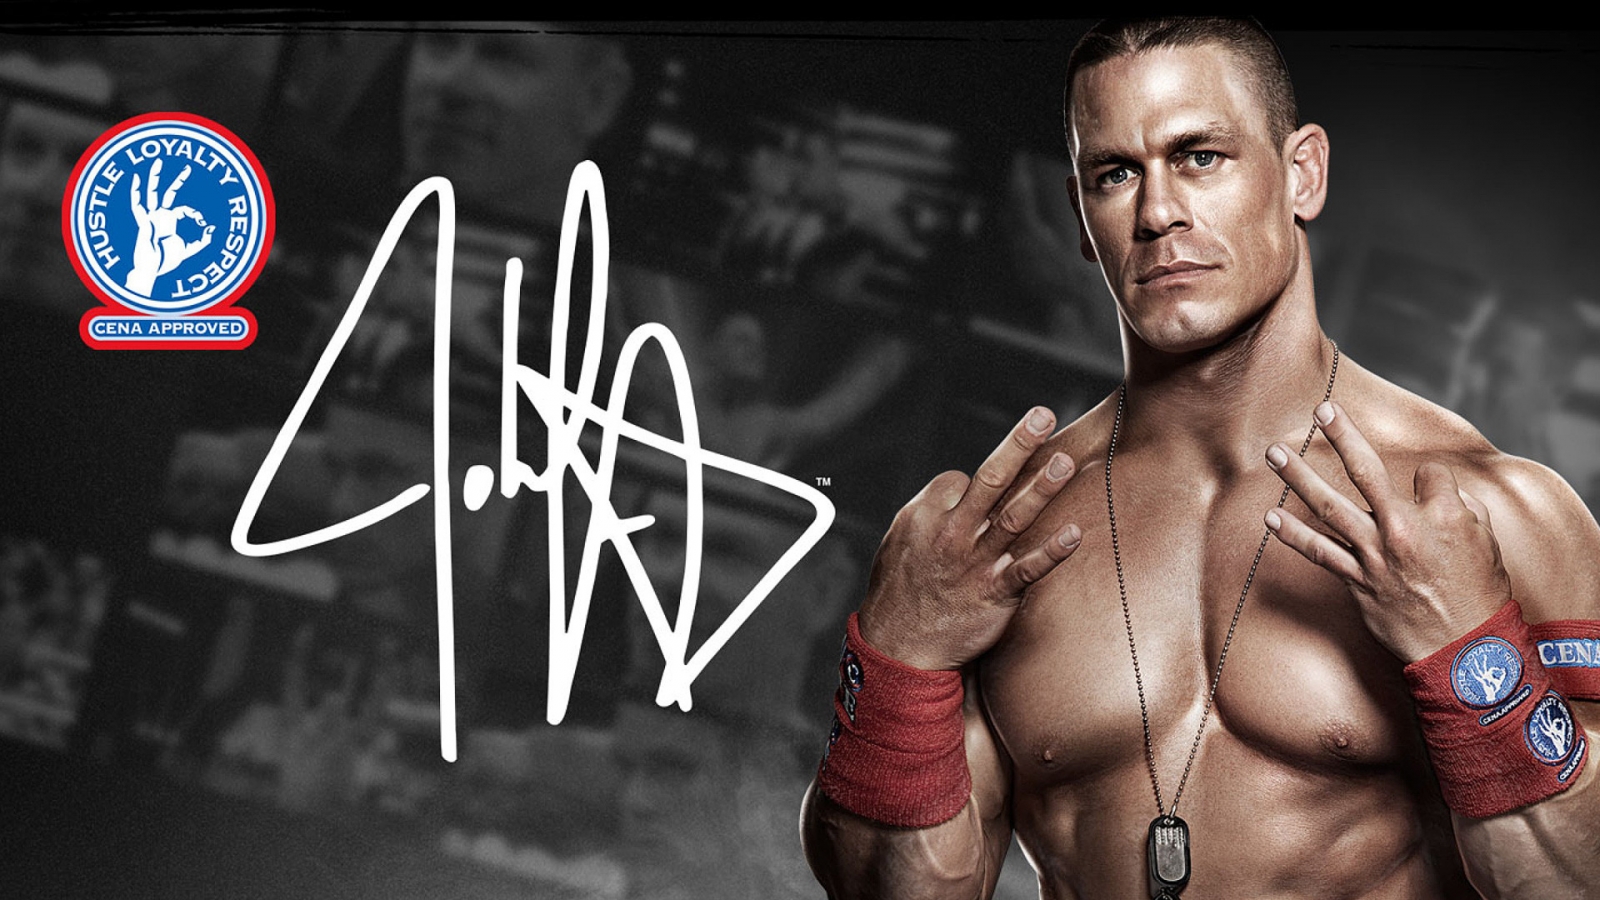 John Cena WWE for 1600 x 900 HDTV resolution